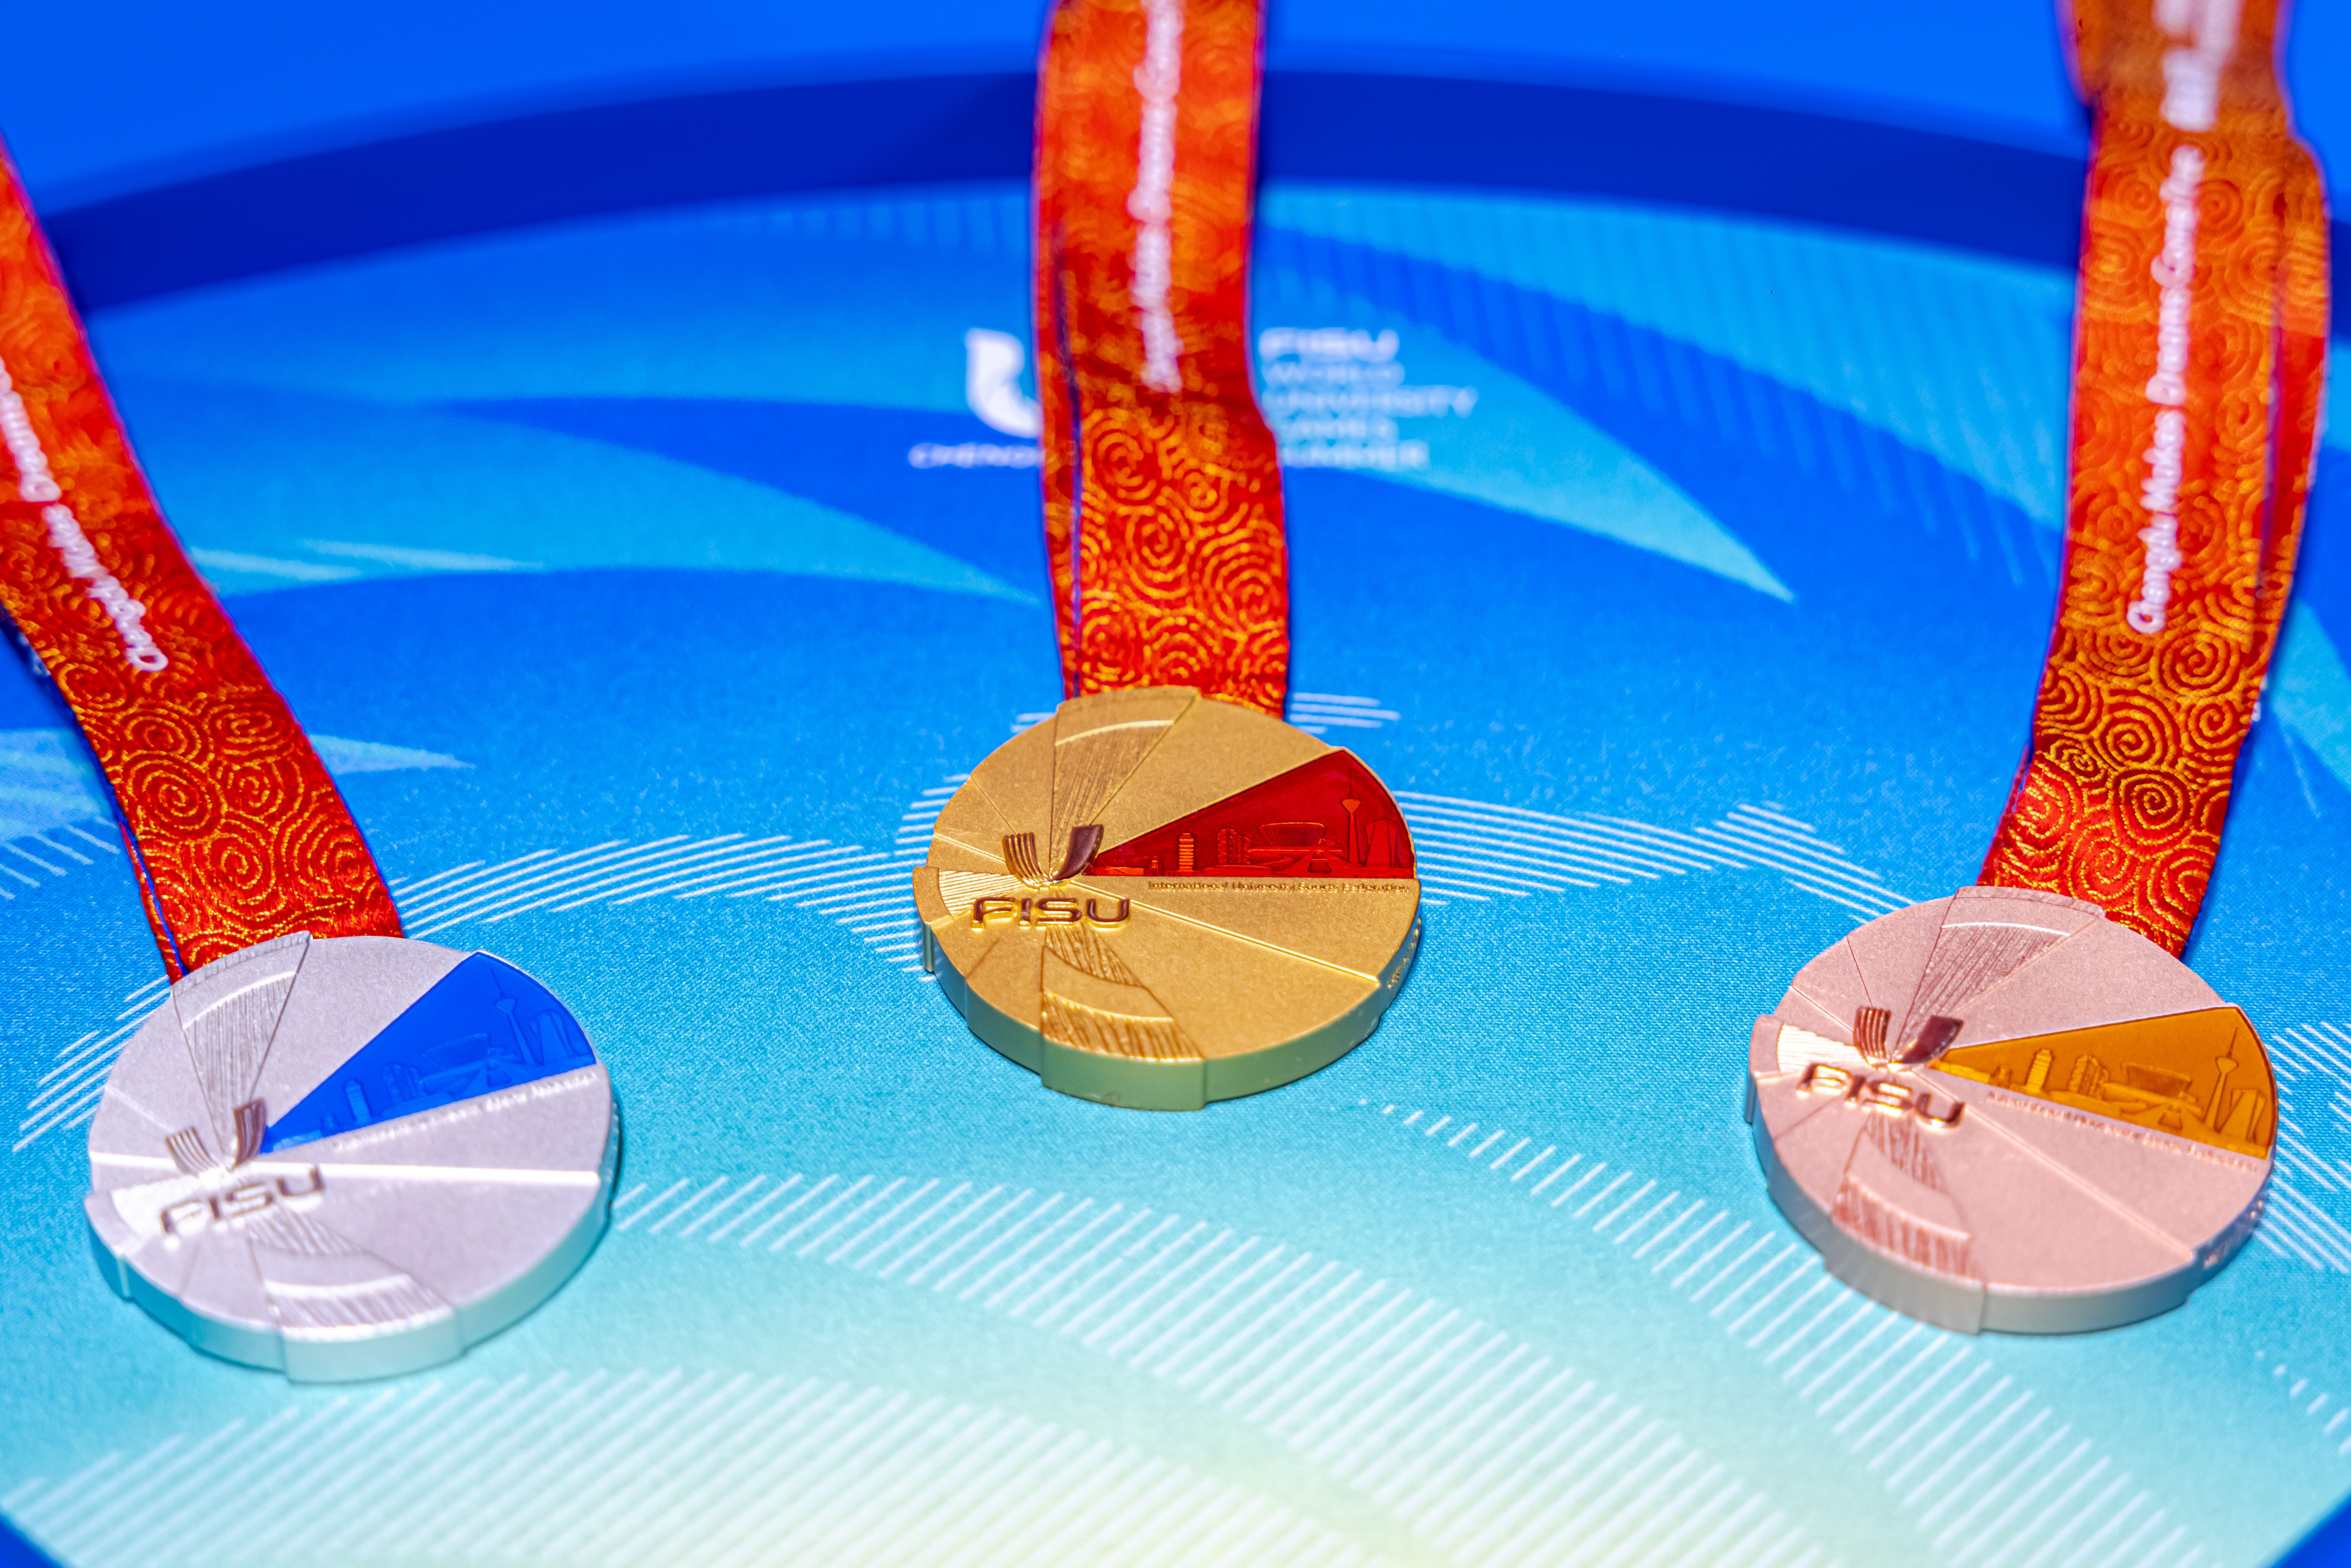 Se publica el diseño de la medalla de los Juegos Mundiales Universitarios  de FISU Chengdu 2021-Juegos Mundiales Universitarios de FISU Chengdu 2021